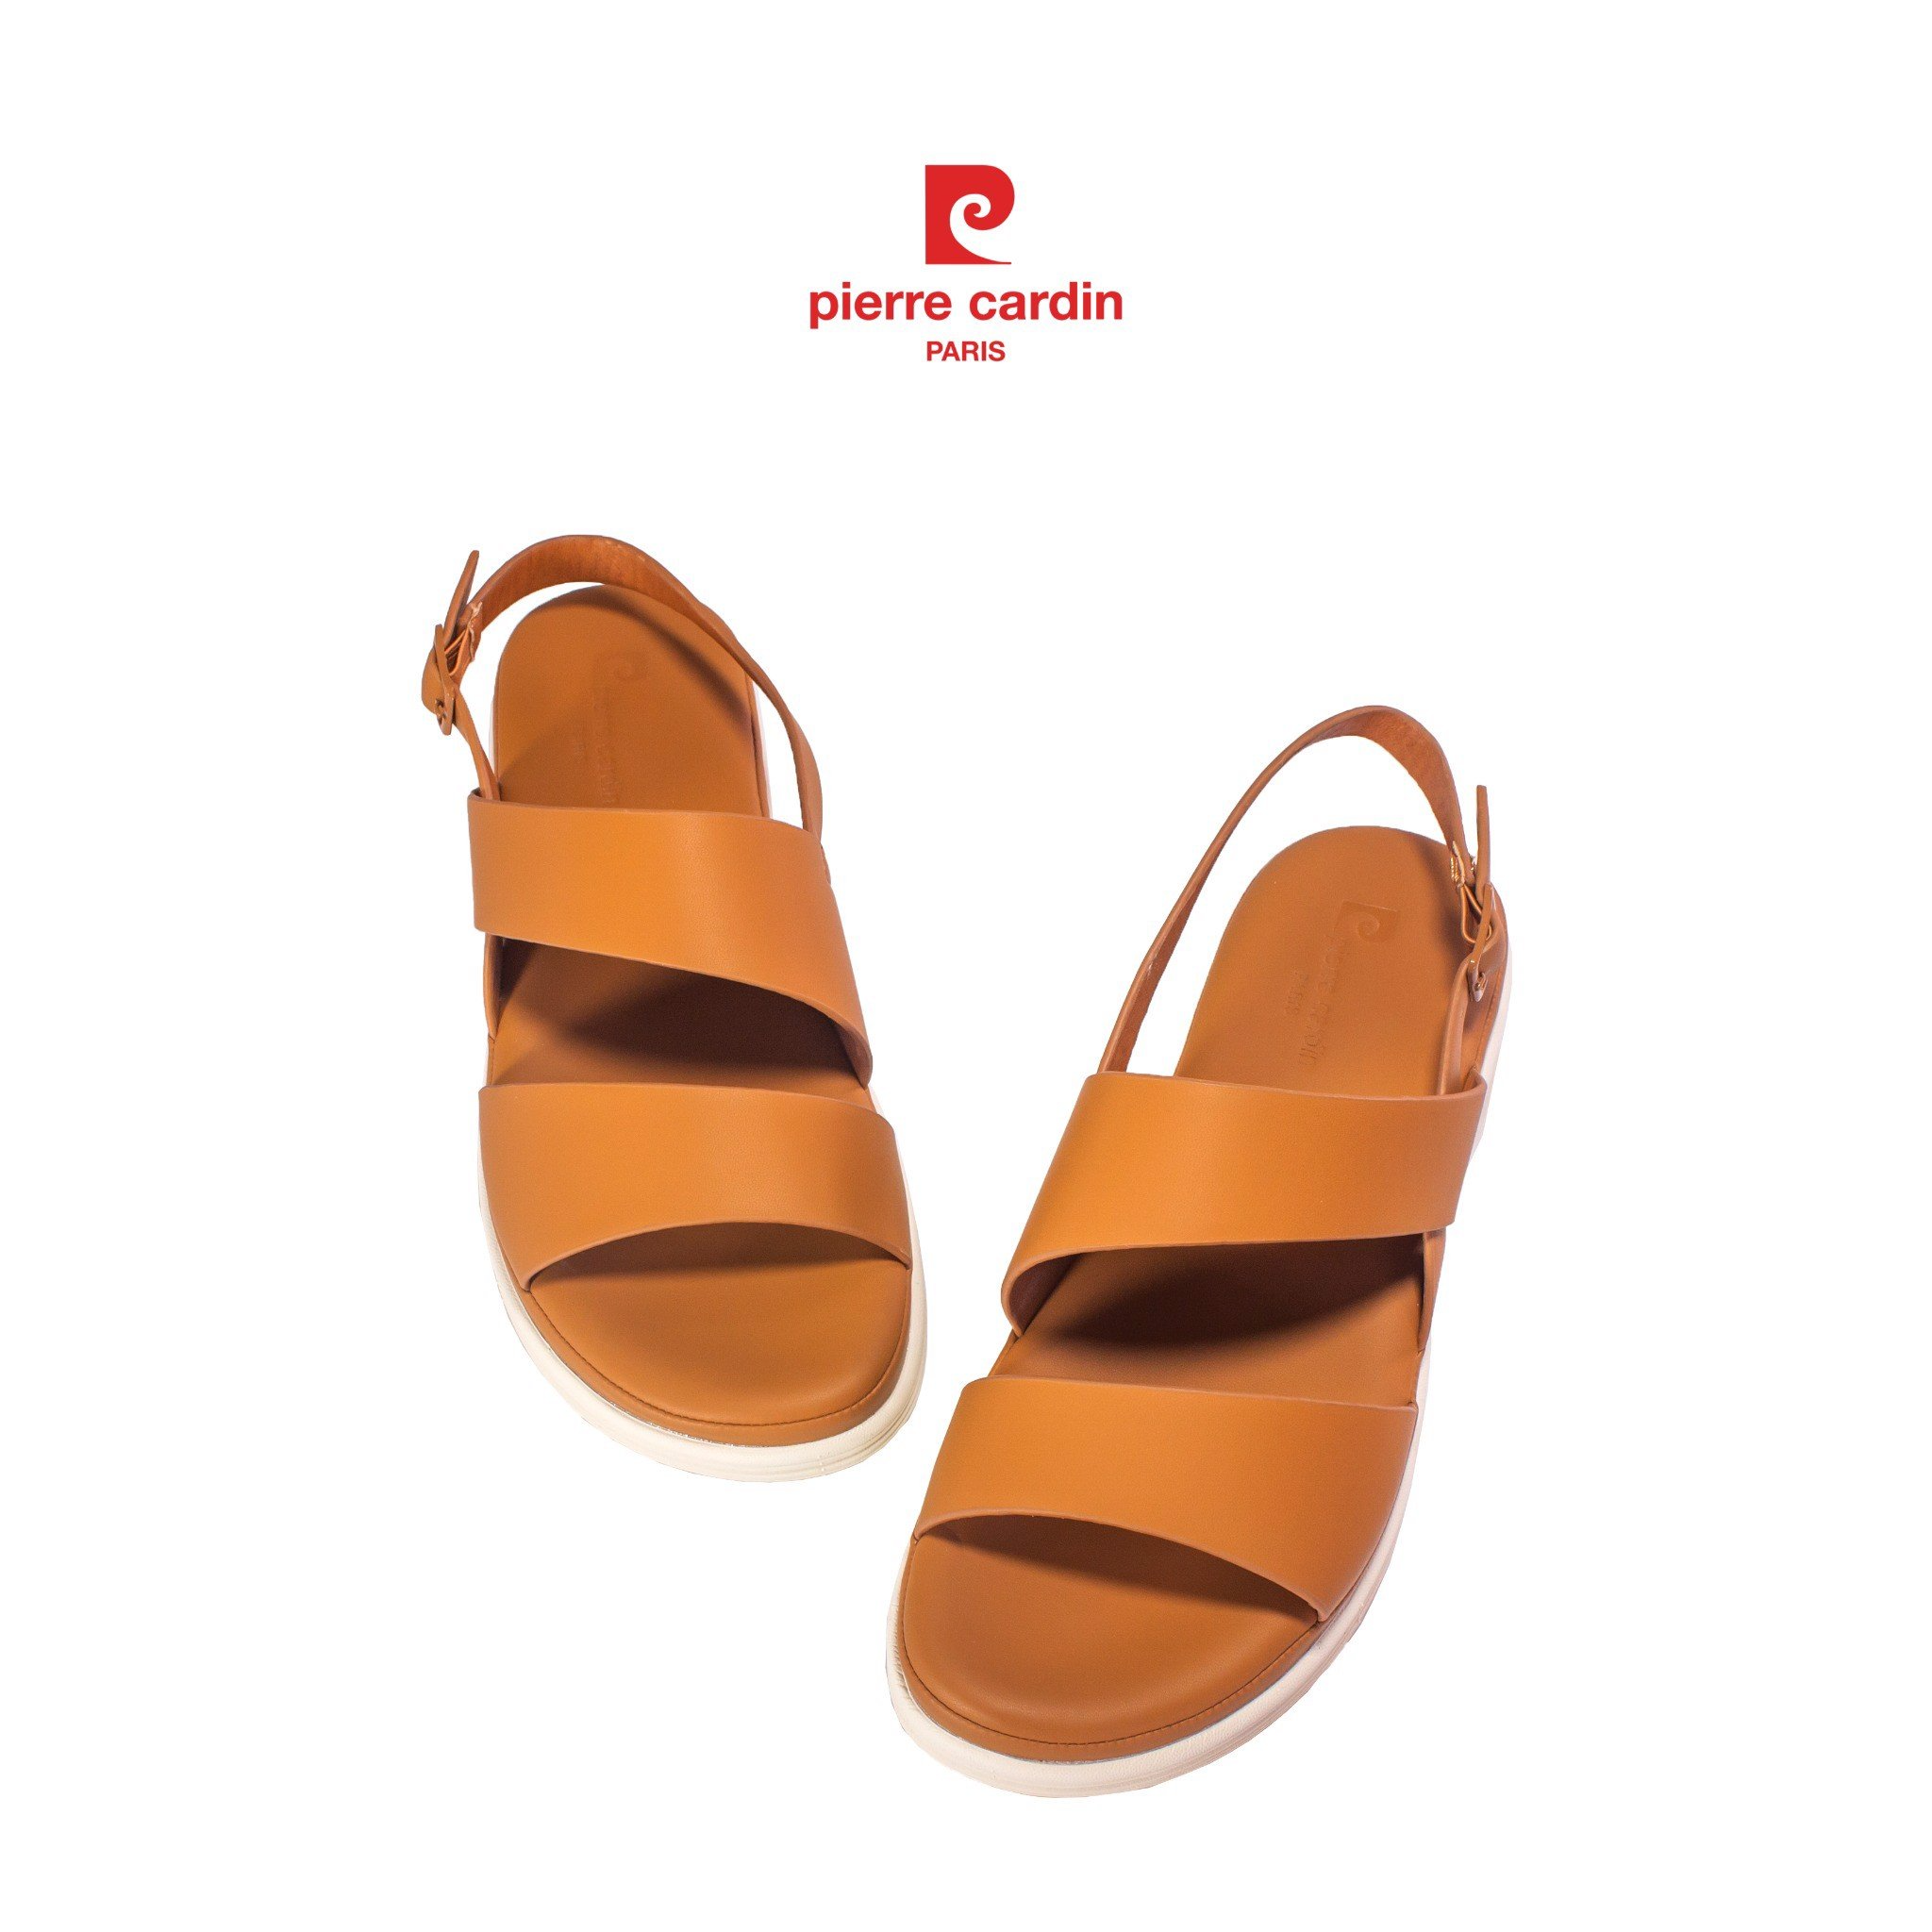 Sandal nữ Pierre Cardin chất liệu da cao cấp, kiểu dáng năng động, thoải mái, quai hậu tăng giảm kích cỡ, đế cao 3cm - PCWFWS 223